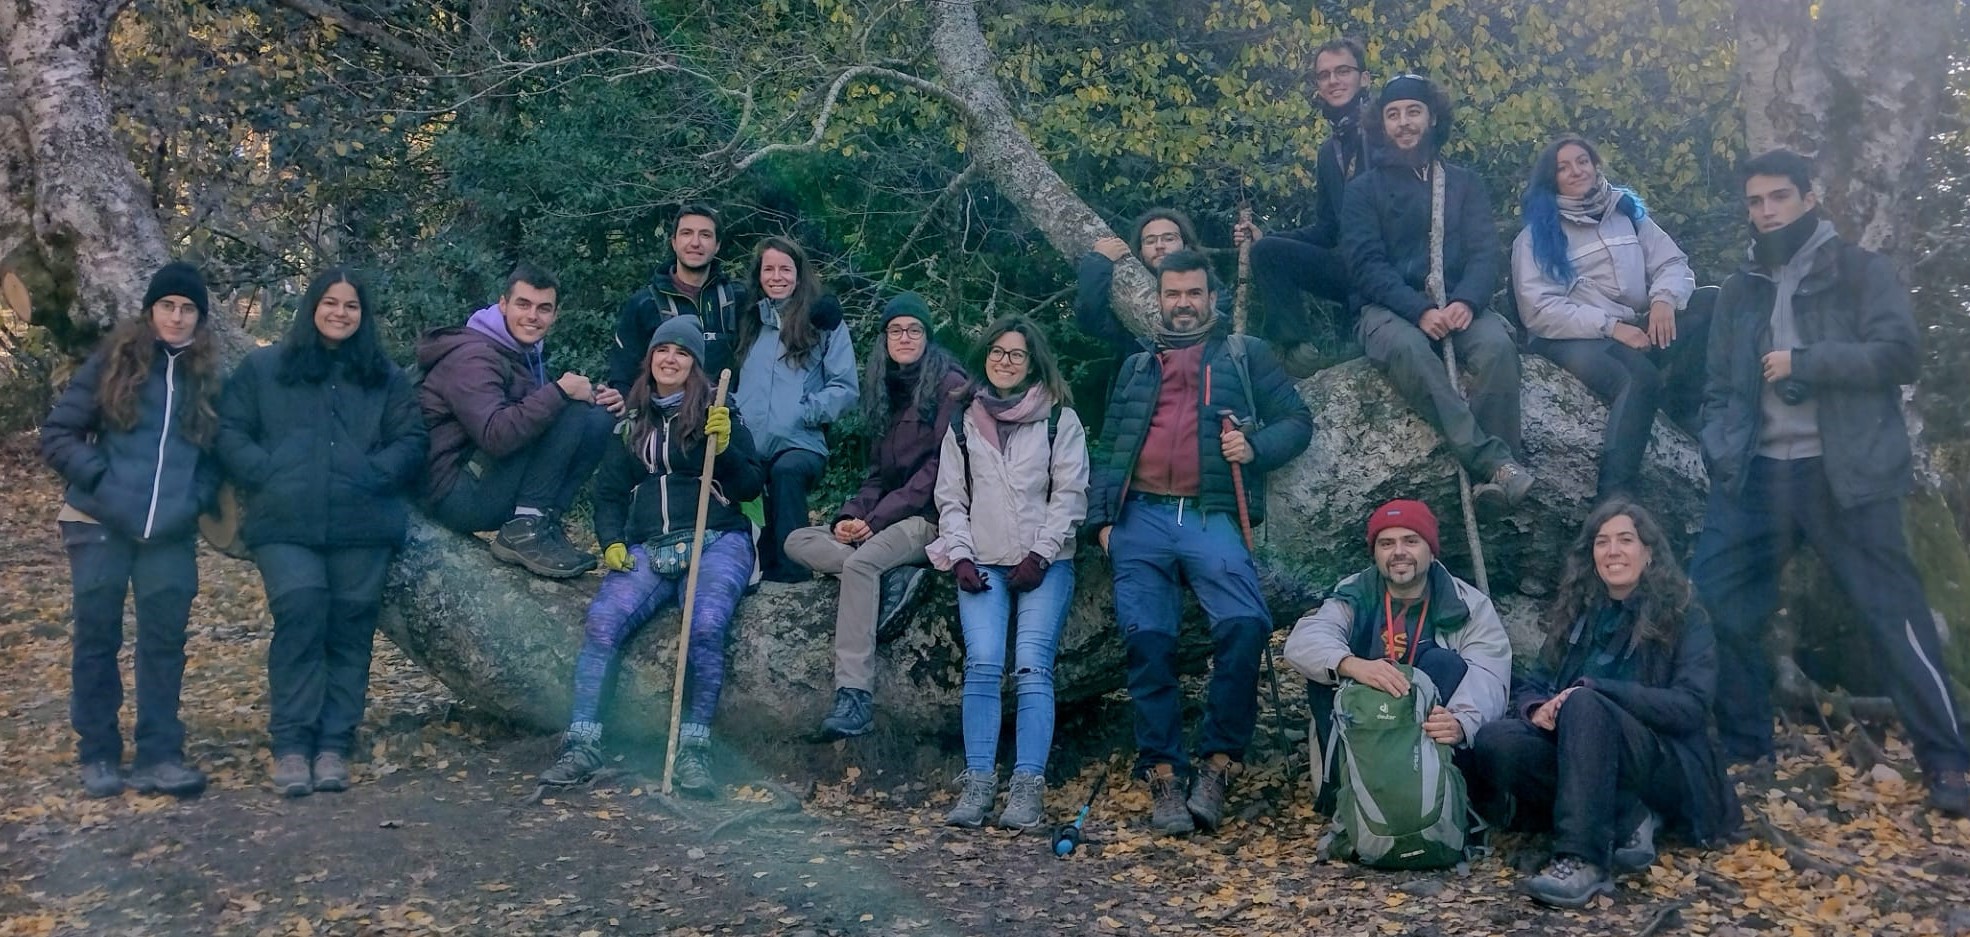 Excursión de alumnos de Análisis de la Biodiversidad Vegetal a la Dehesa Bonita de Somosierra